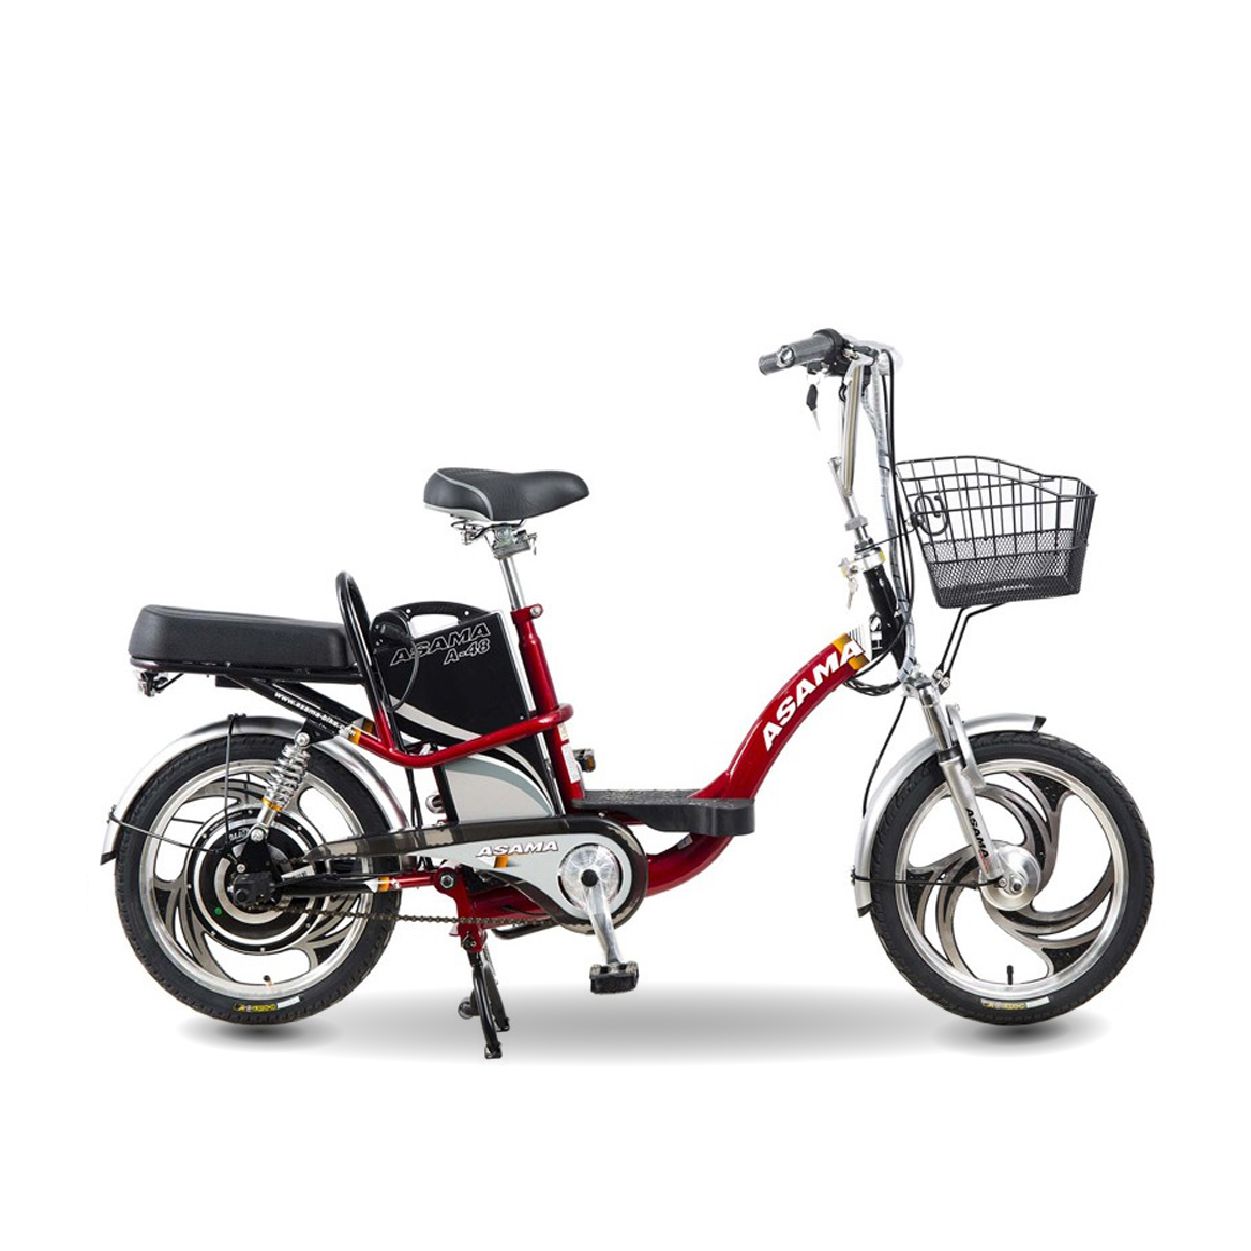 Xe đạp điện Asama cũ giá rẻ bình ắc quy khỏe đi 30km1 lần sạc